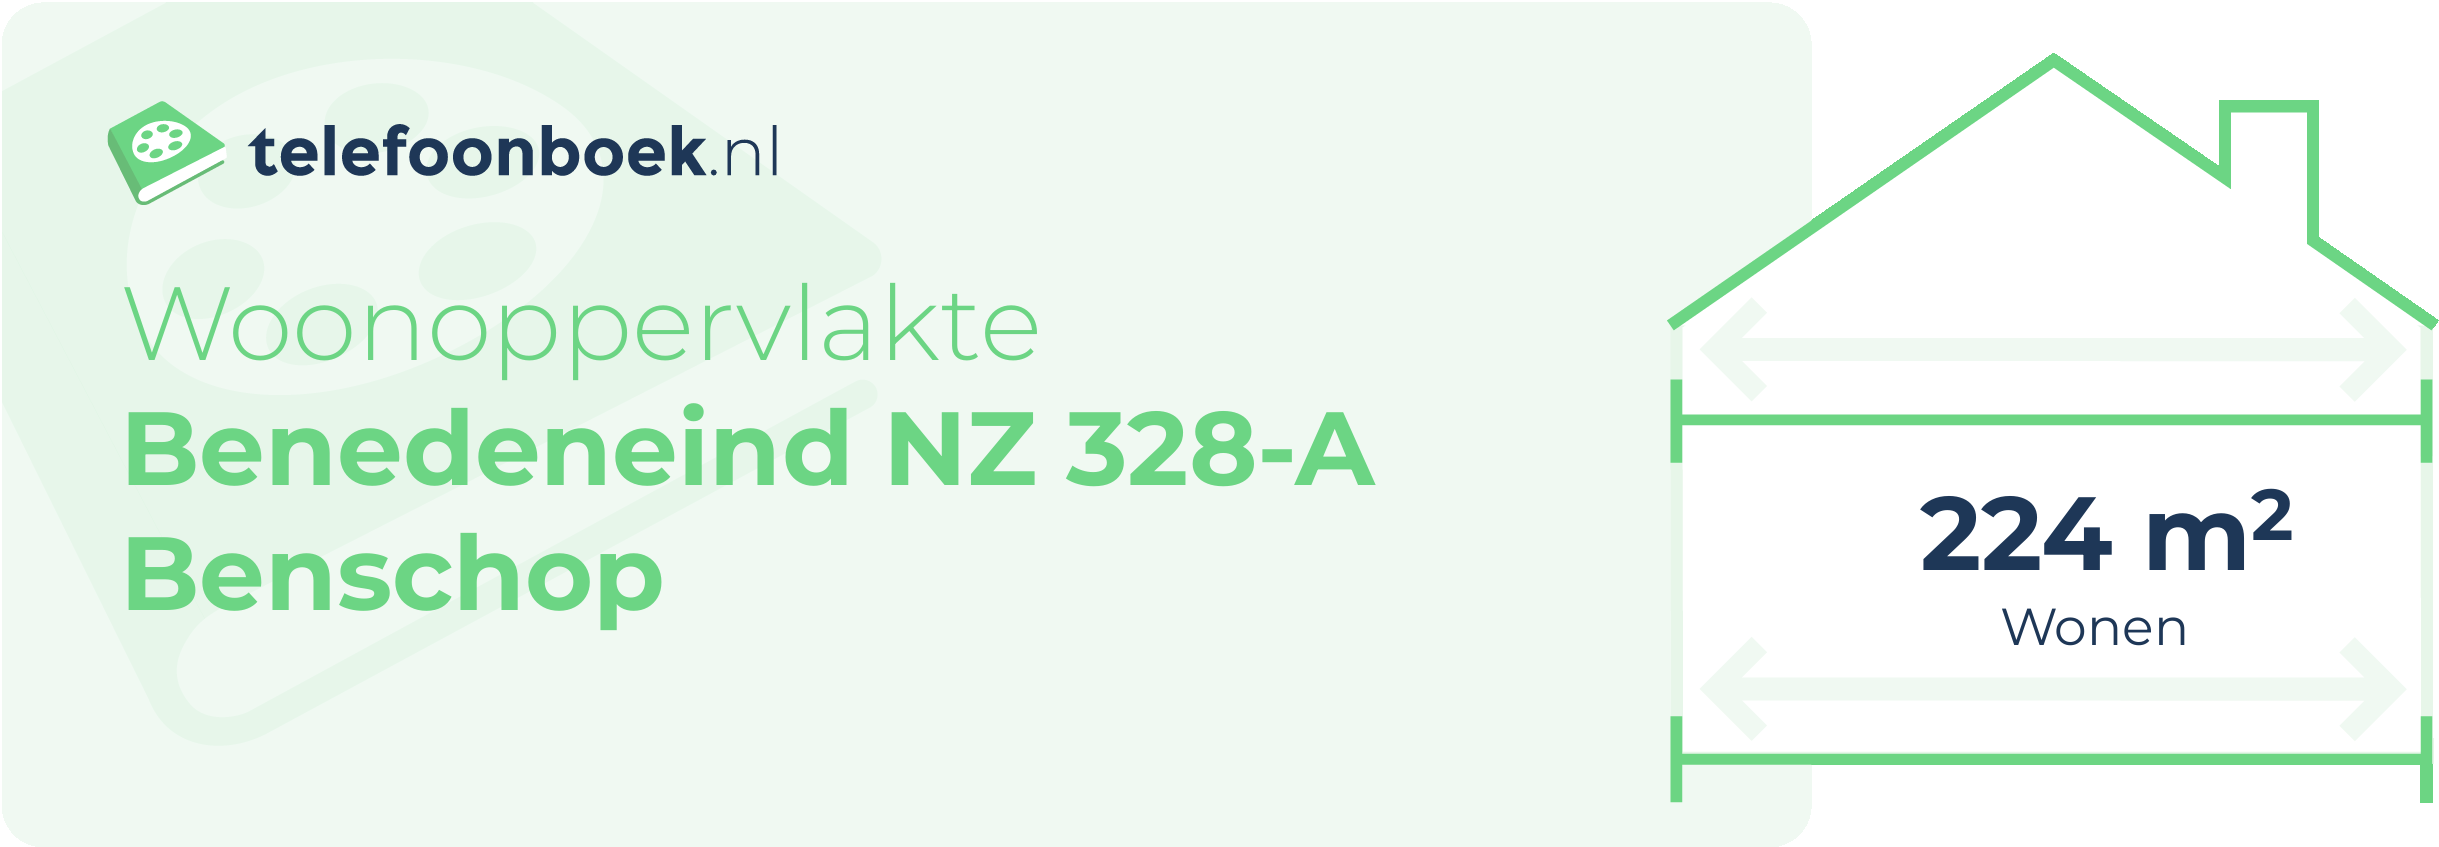 Woonoppervlakte Benedeneind NZ 328-A Benschop